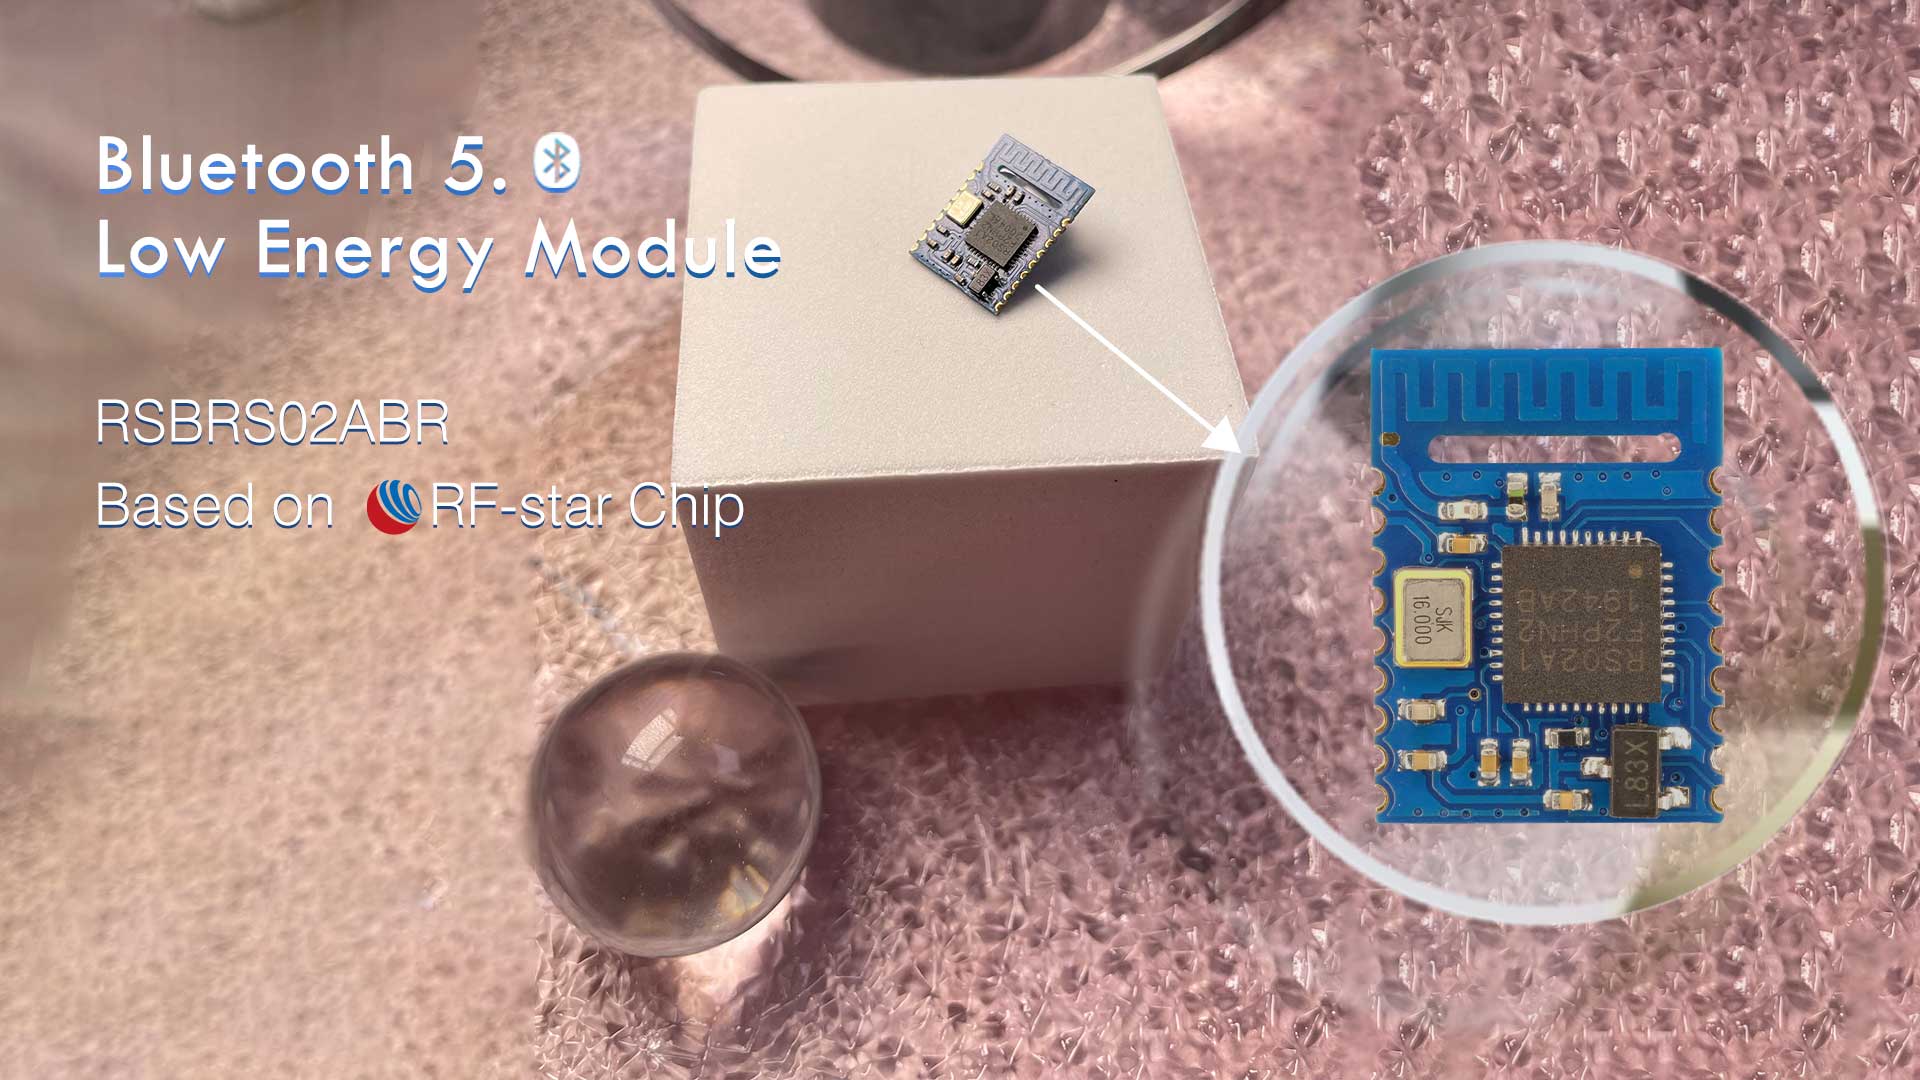 Modulo Bluetooth 5.0 a basso consumo RSBRS02ABR Basato su chip RF-star